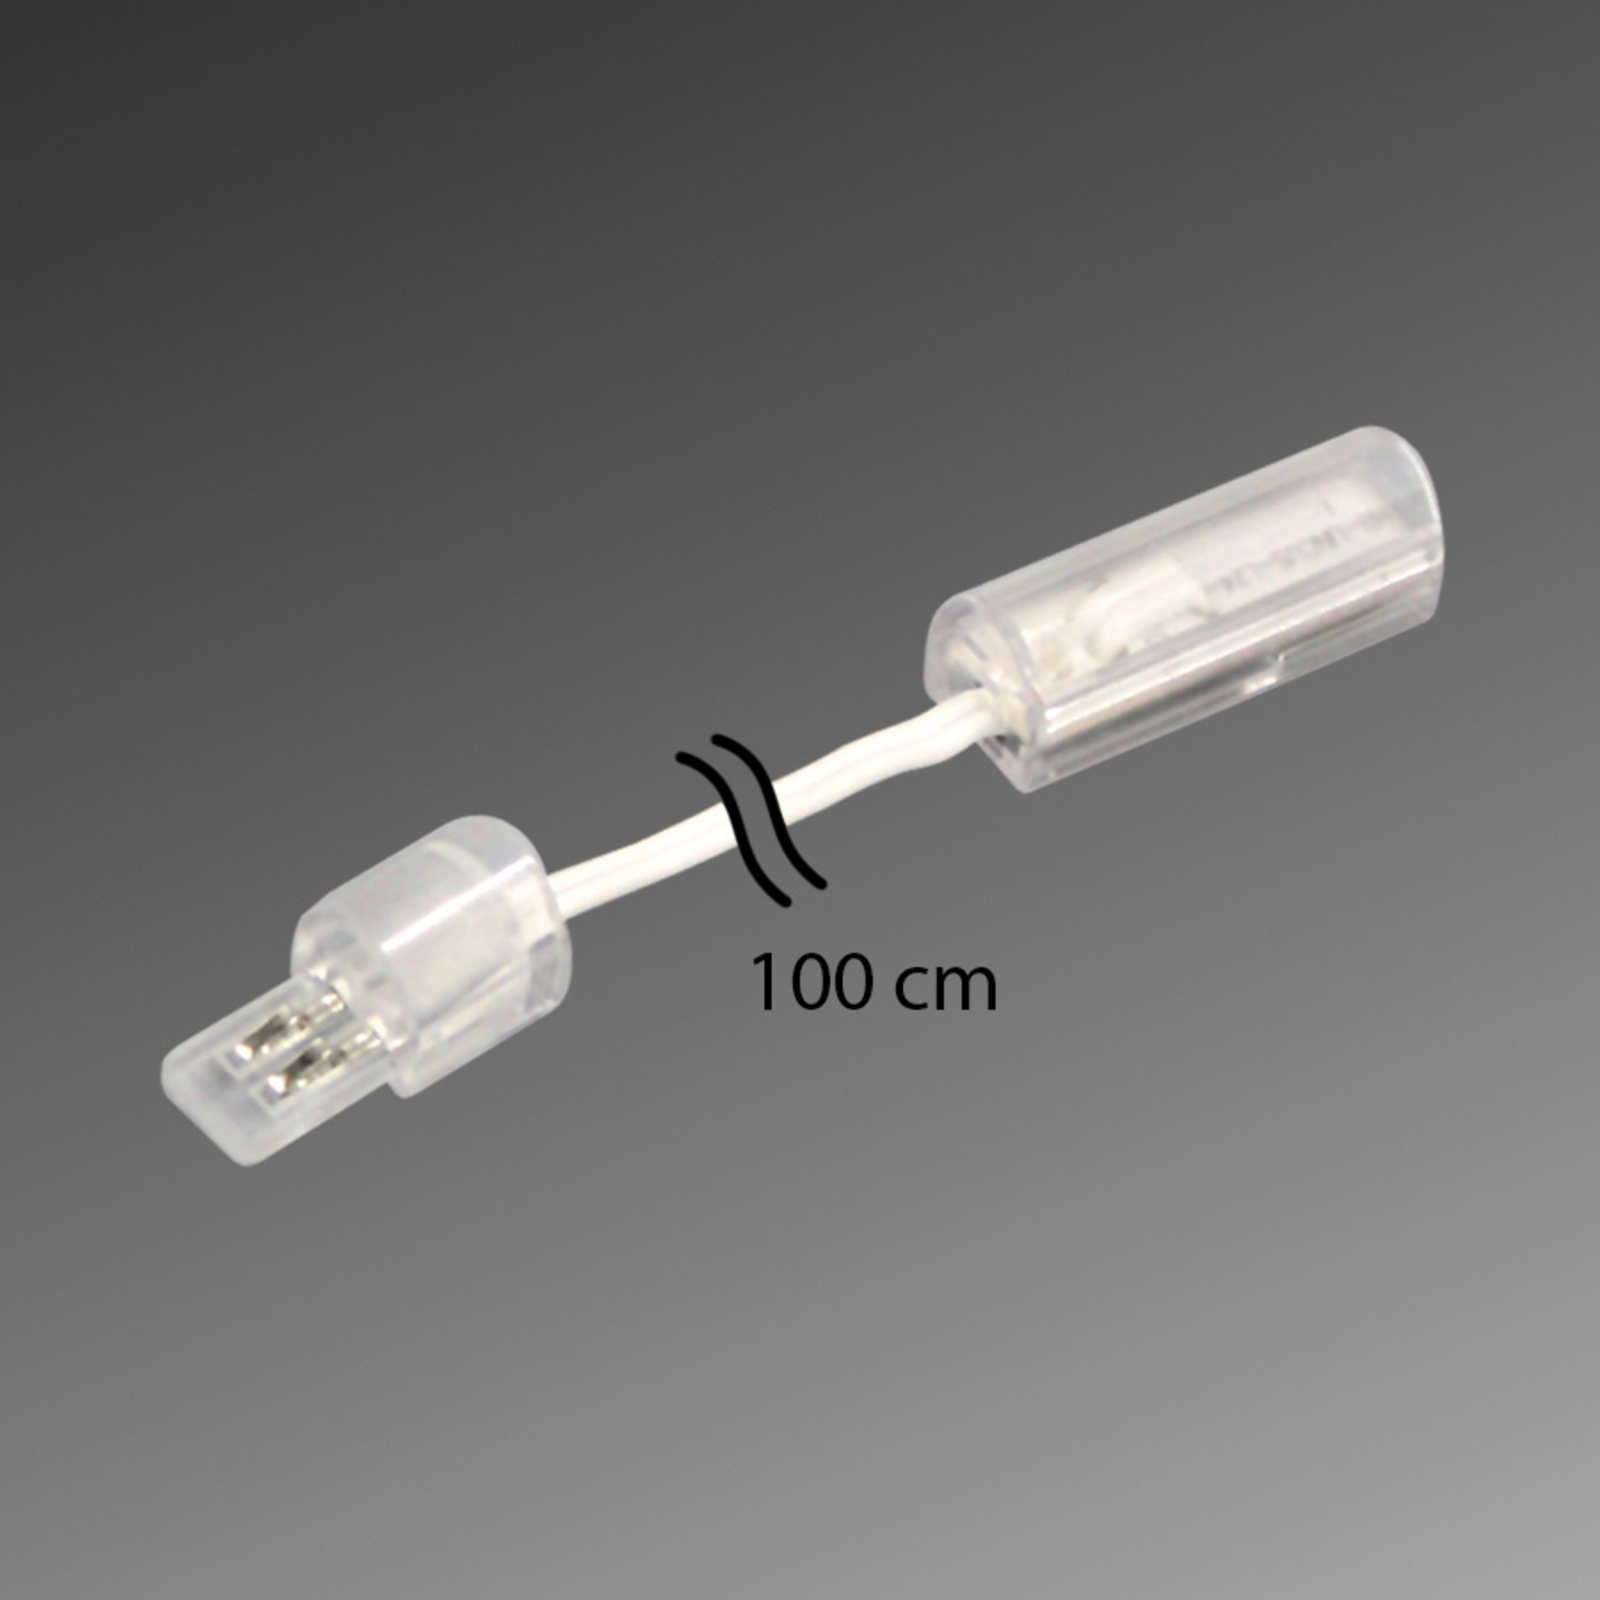 Câble de connexion pour LED STICK 2, 100 cm